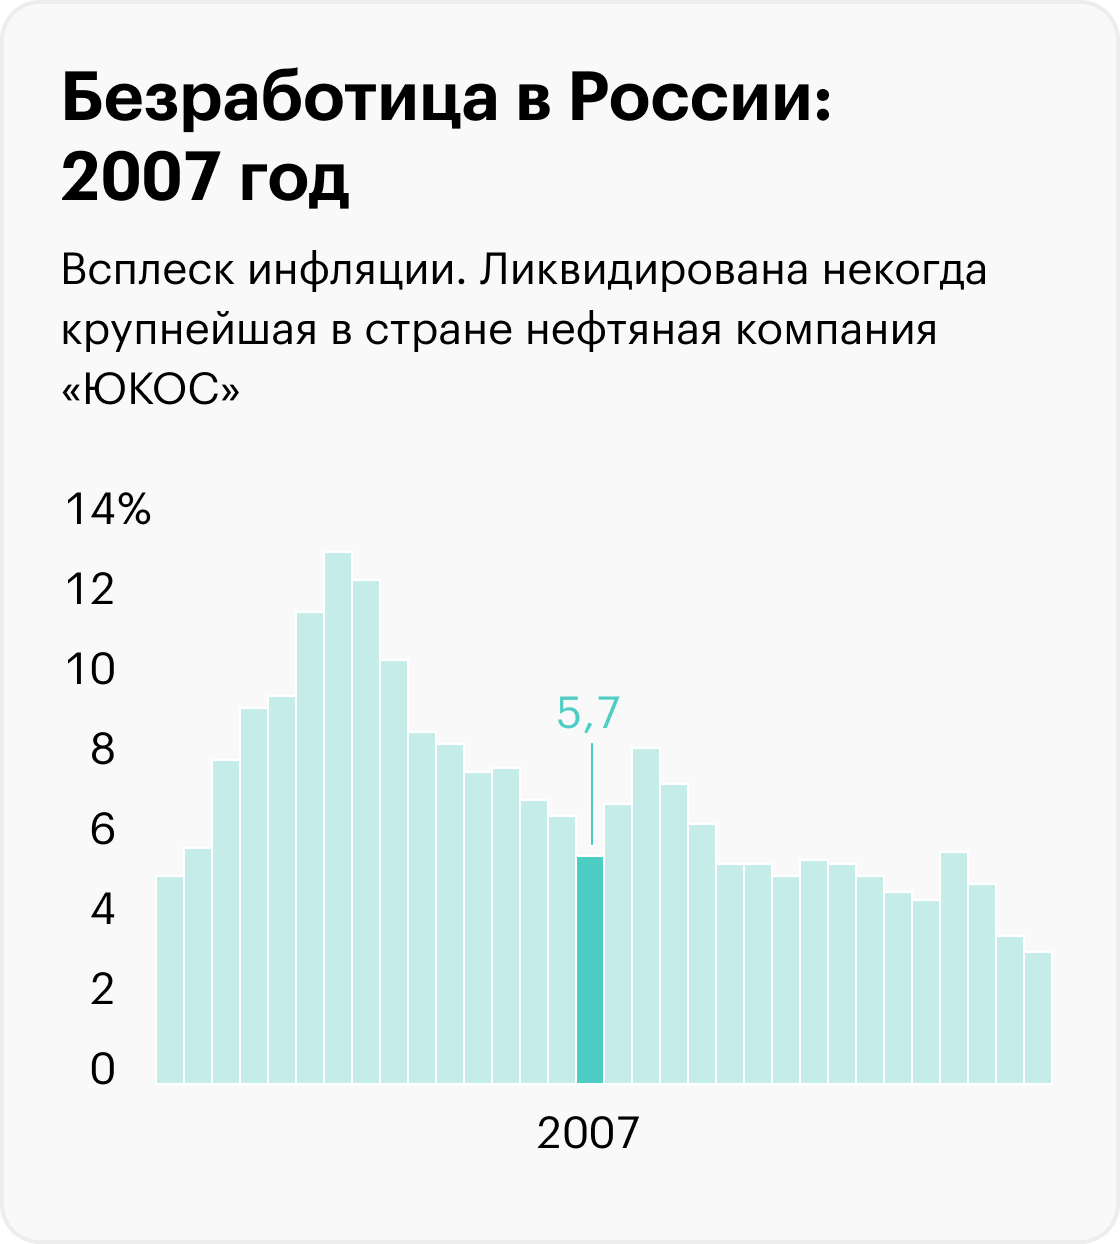 На графиках приведены значимые события, которые помогают понять экономический контекст, но не объясняют уровень безработицы. Информация до 2017 года рассчитана для населения в возрасте 15⁠—⁠72 лет, с 2017 — от 15 лет. Источники: Росстат (1992⁠—⁠2010), Росстат (2011⁠—⁠2014), Росстат (2015⁠—⁠2020), Минтруд (2021), Минтруд (2022), МВФ (прогноз на 2023)